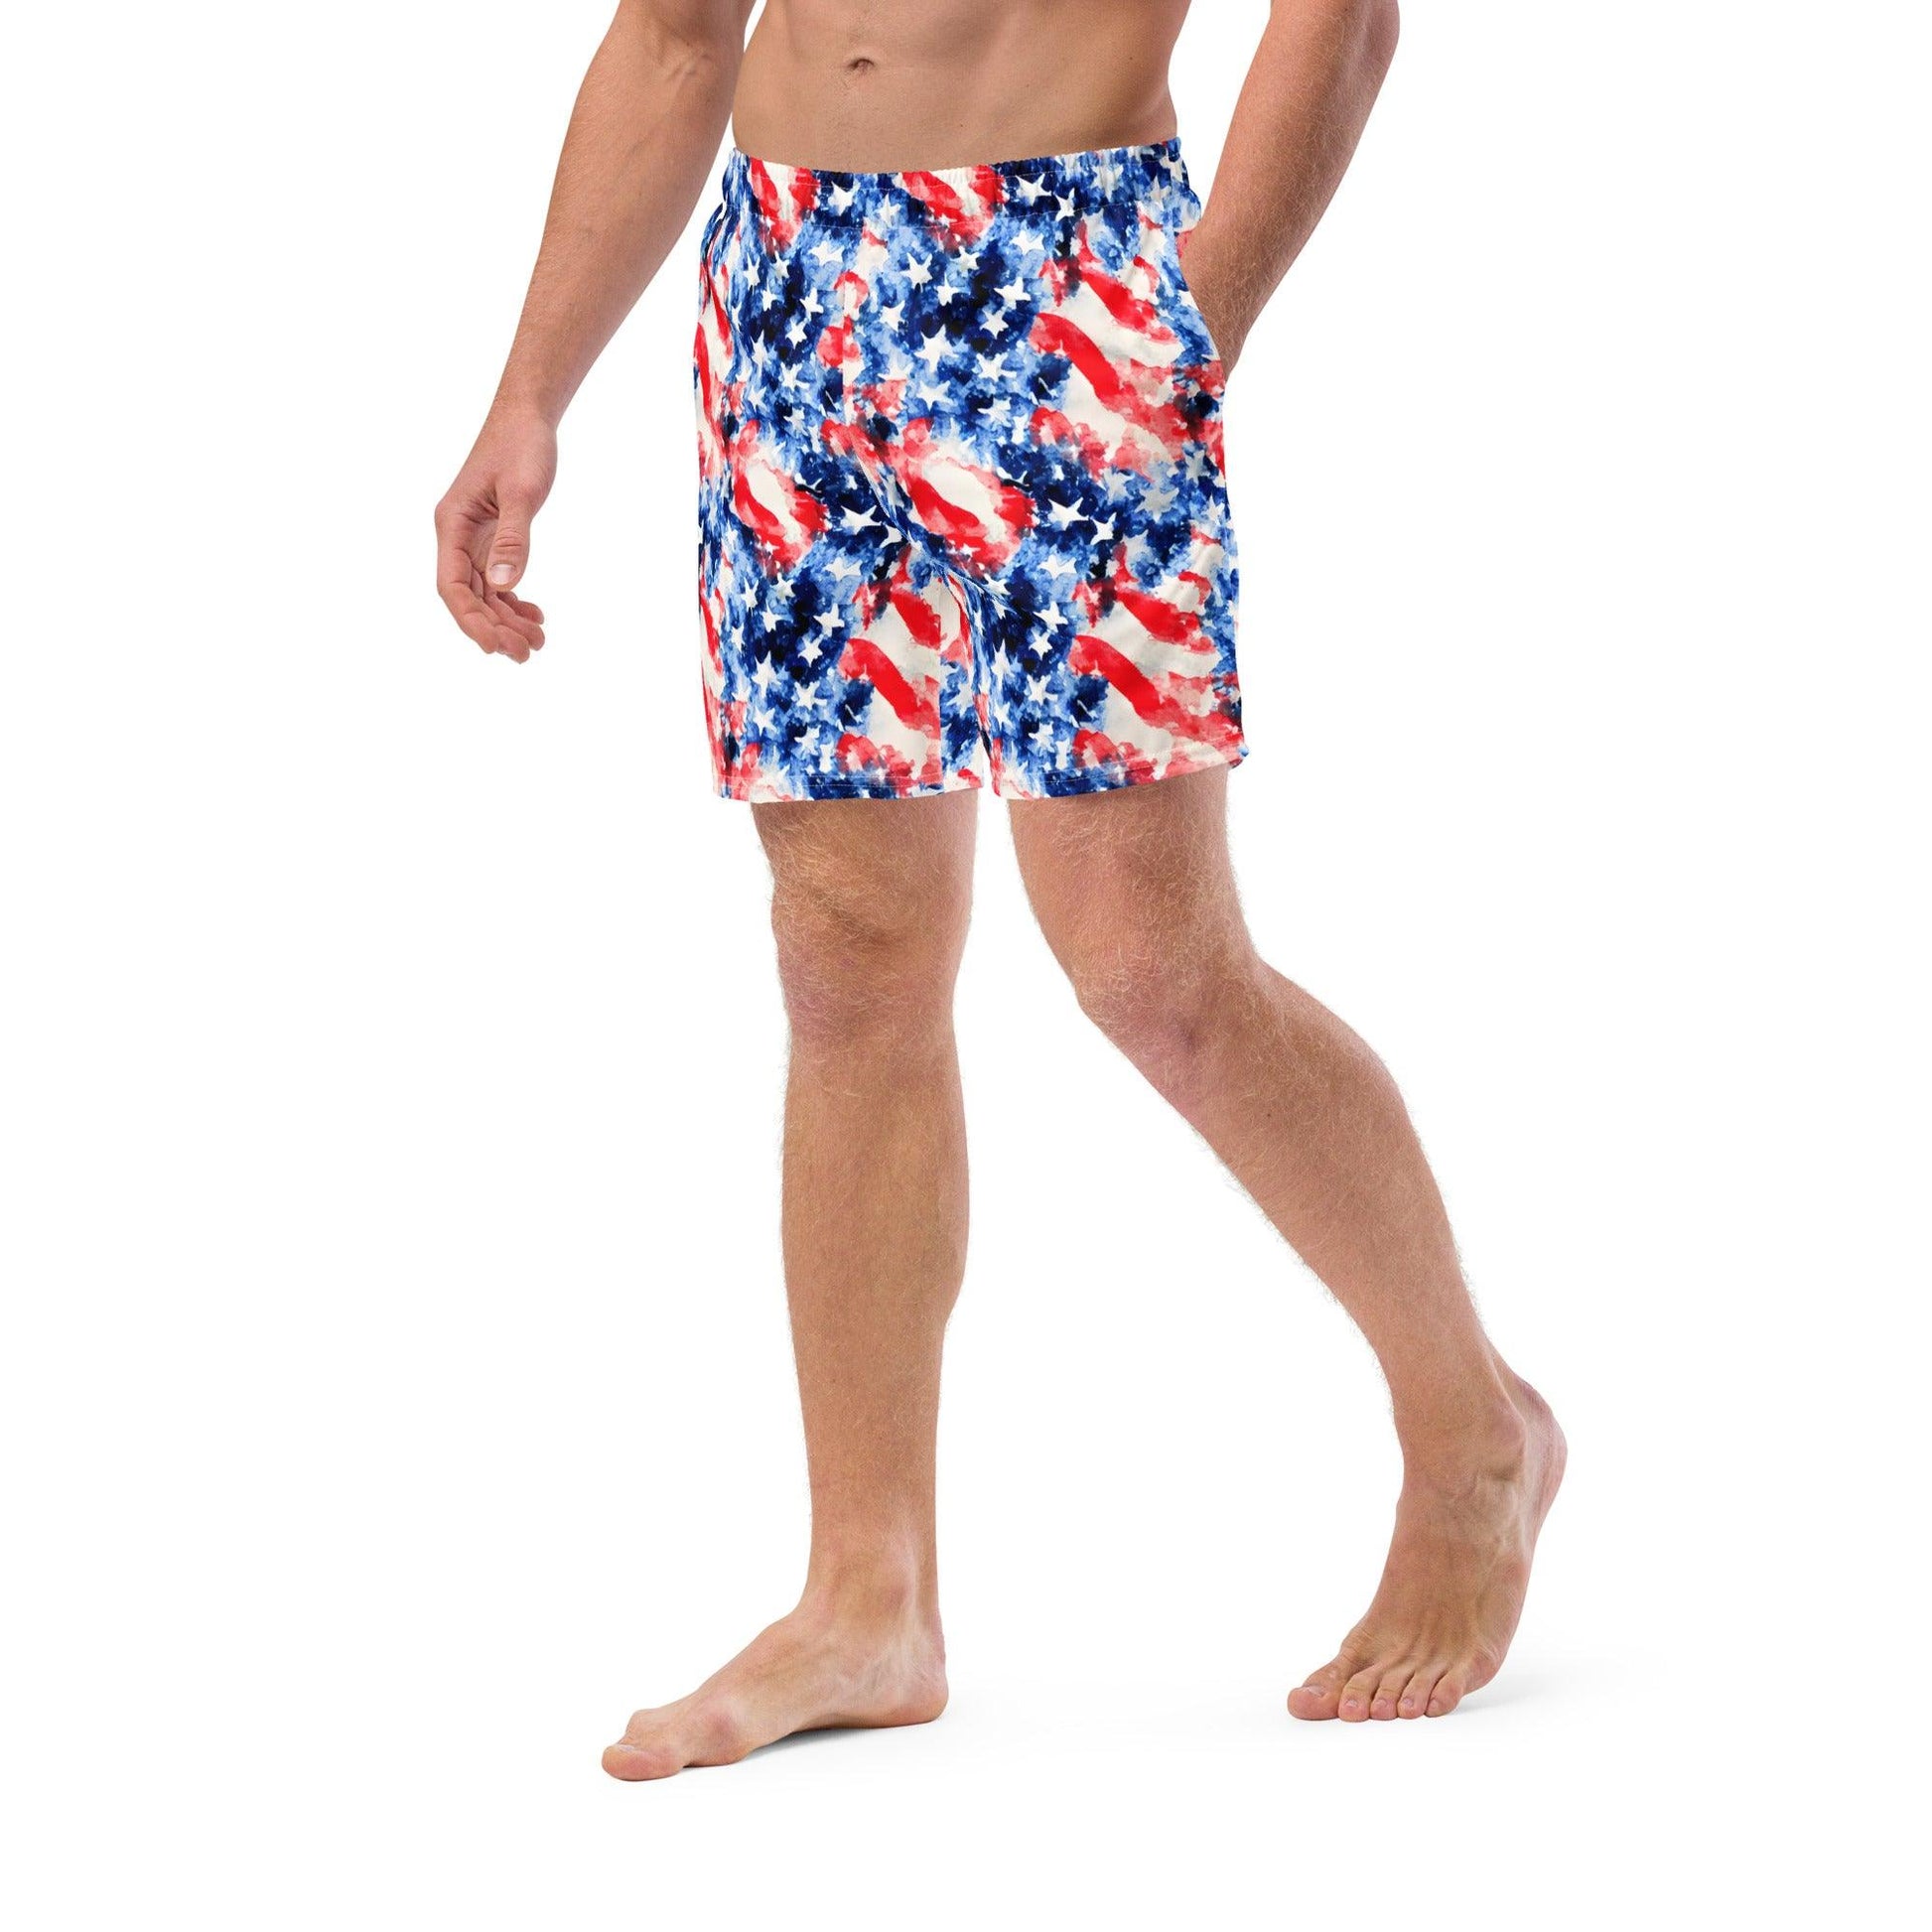 American Flag Recycled Men's Swim Trunks - The Global Wanderer